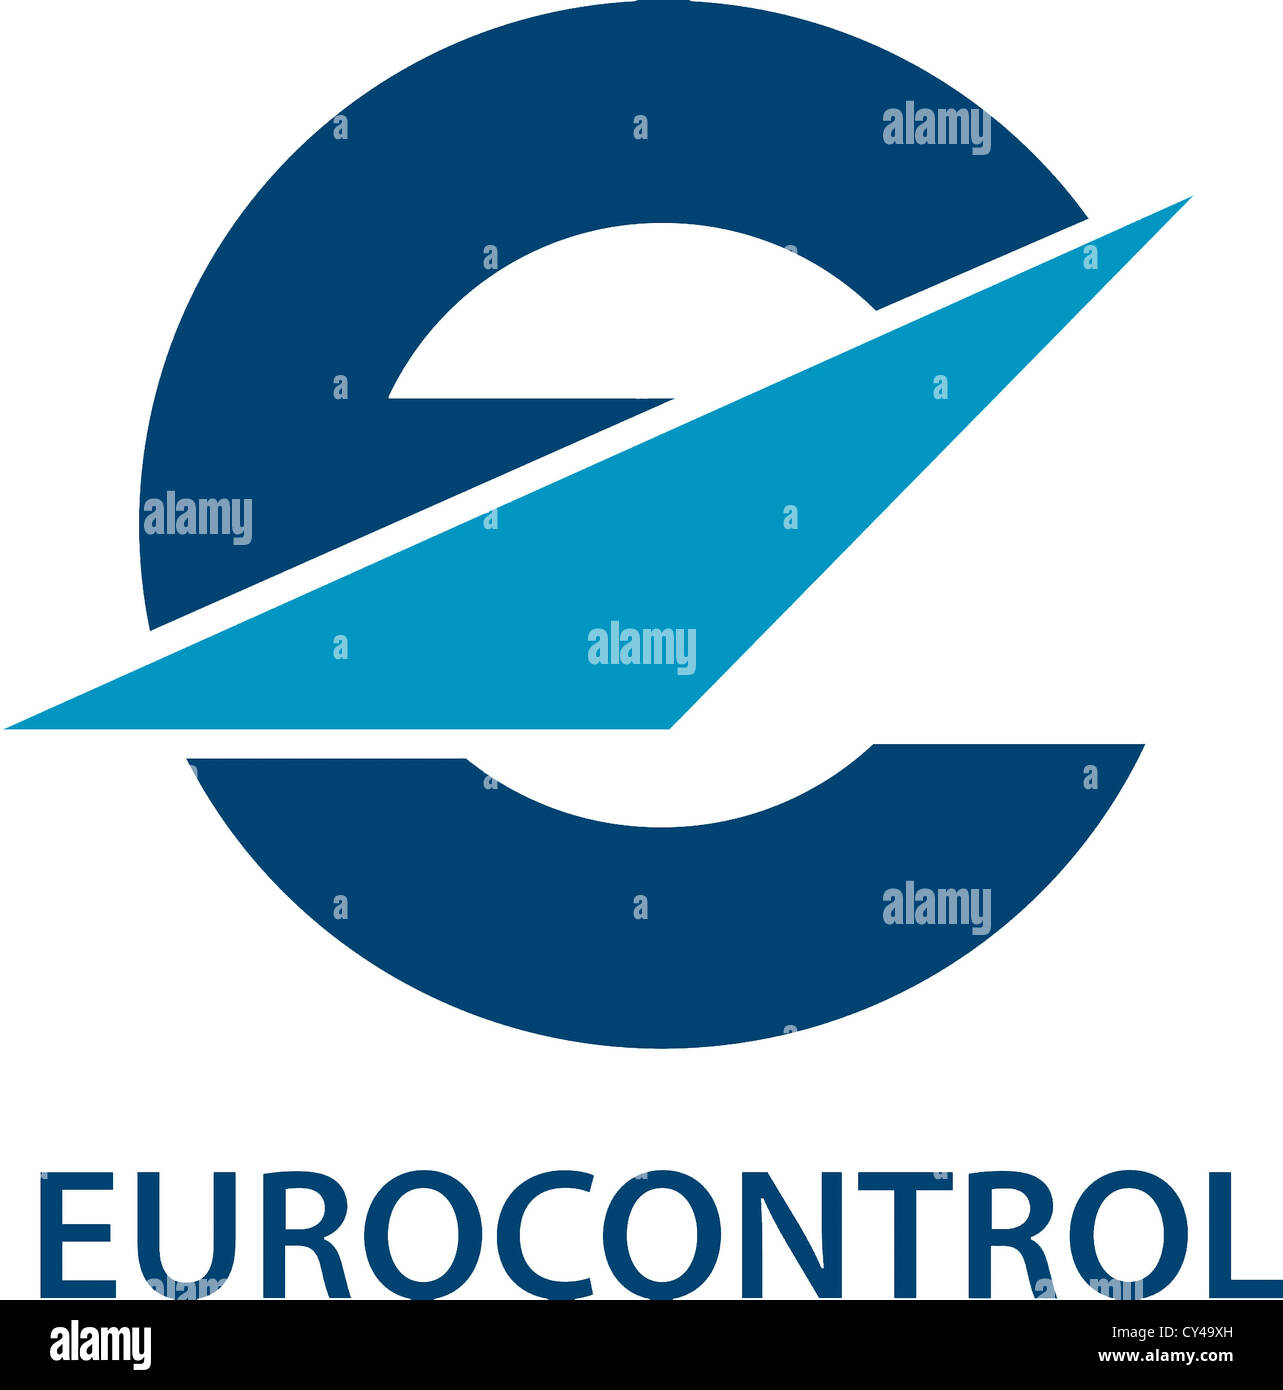 Logotipo de la Unión Organiziation para la seguridad de la Navegación Aérea, Eurocontrol, con sede en Bruselas. Foto de stock